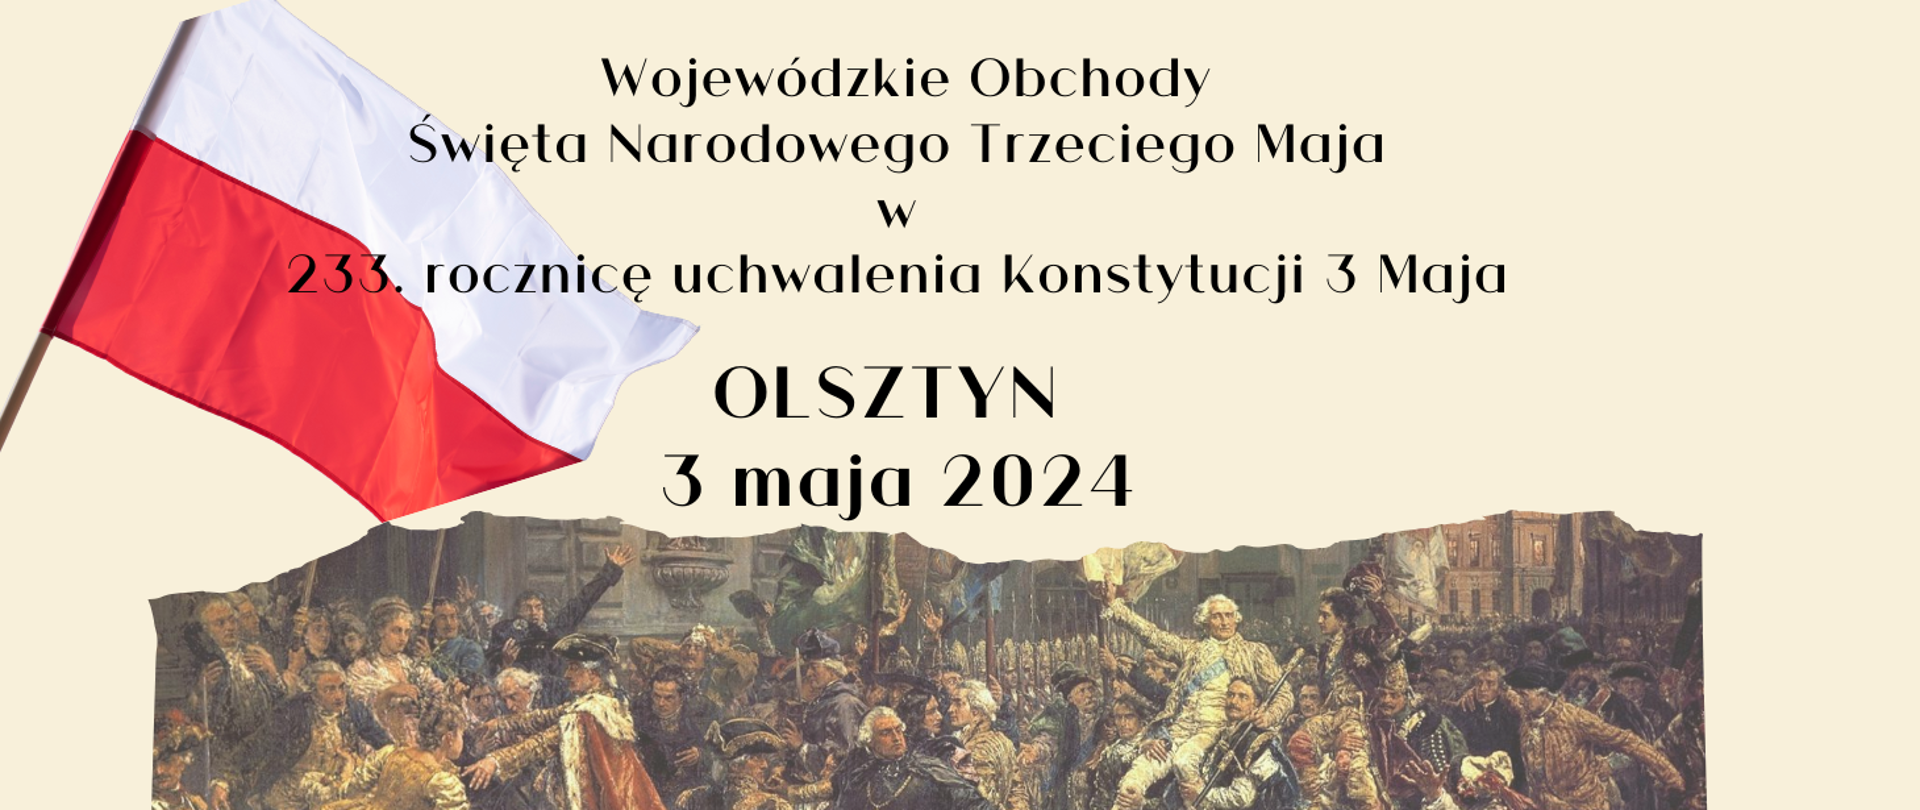 Zapraszamy na Wojewódzkie Obchody Święta Narodowego Trzeciego Maja w 233. rocznicę uchwalenia Konstytucji 3 Maja